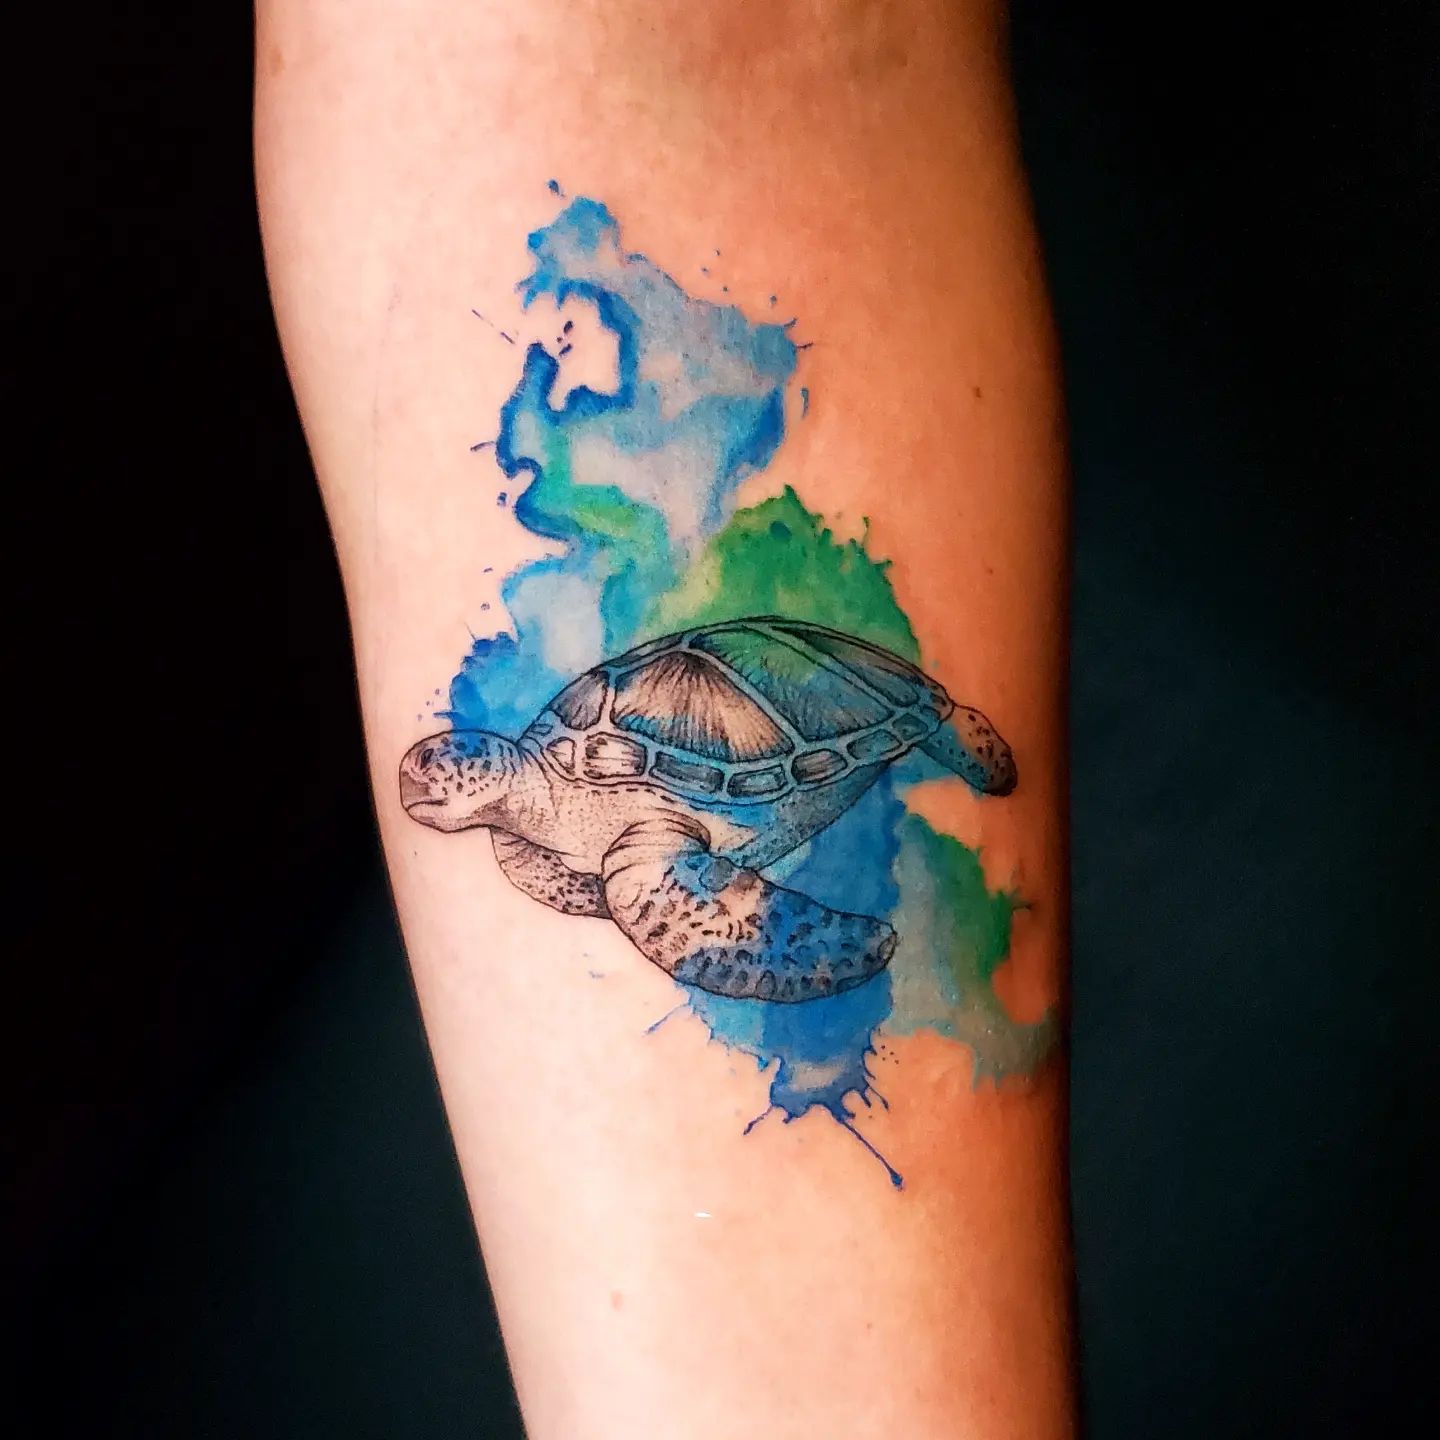 Tatuaż czarnego żółwia z niebieskimi i zielonymi akwarelowymi plamami